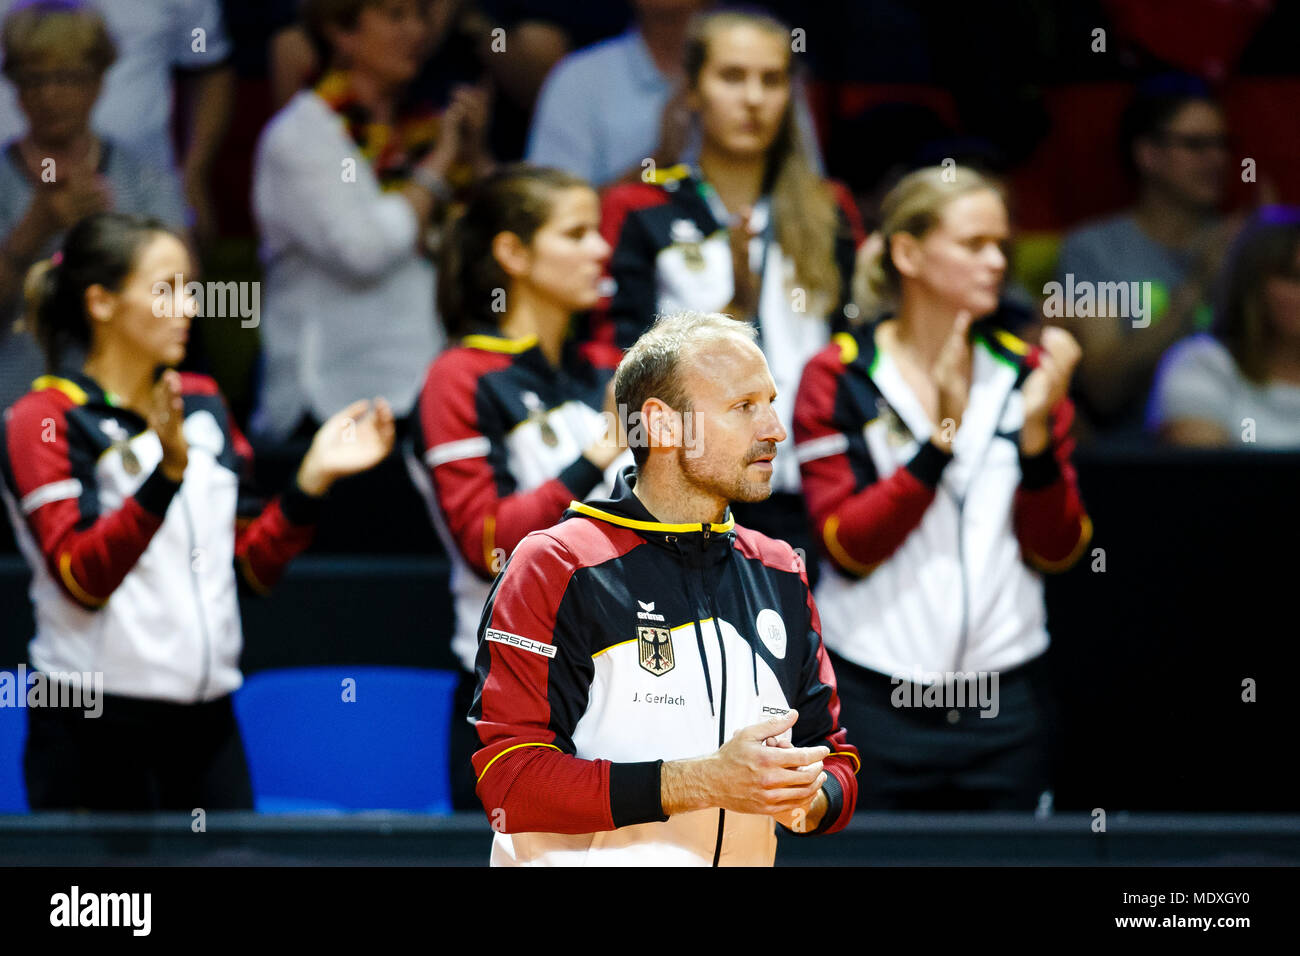 Stuttgart, Allemagne, 21 avril, 2018. Le capitaine de l'équipe allemande Jens Gerlach pendant la demi-finale de Fed Cup. Crédit : Frank Molter/Alamy Live News Banque D'Images